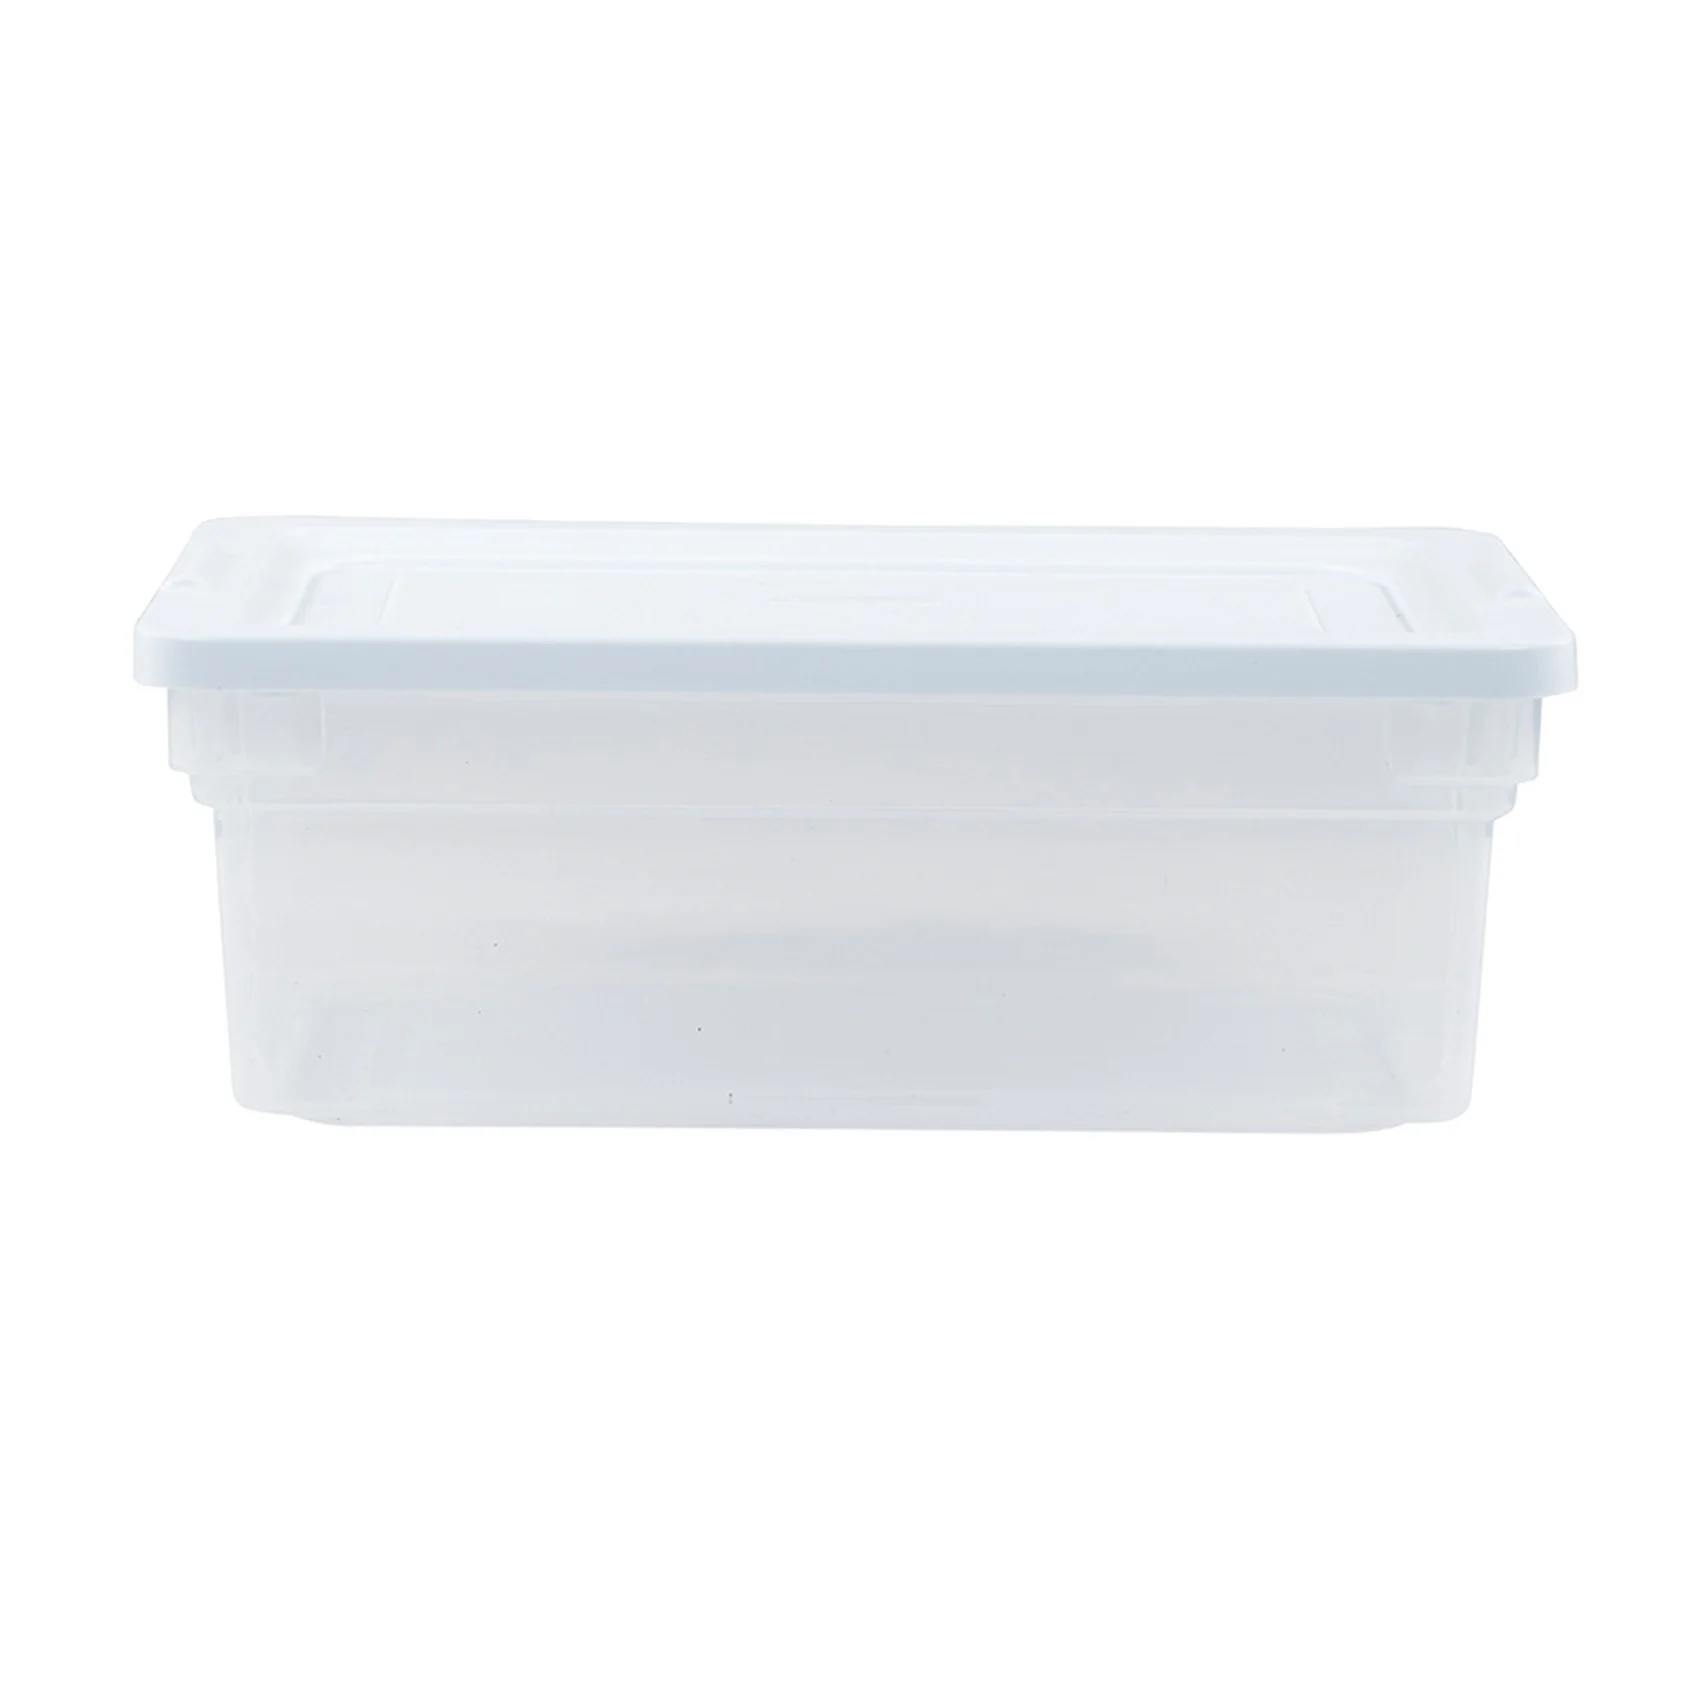 Штабелируемые Литые пластиковые контейнеры для хранения с легким доступом, Штабелируемые с крышкой для Гаража, спальни, кладовки или сарая, Прозрачные 0